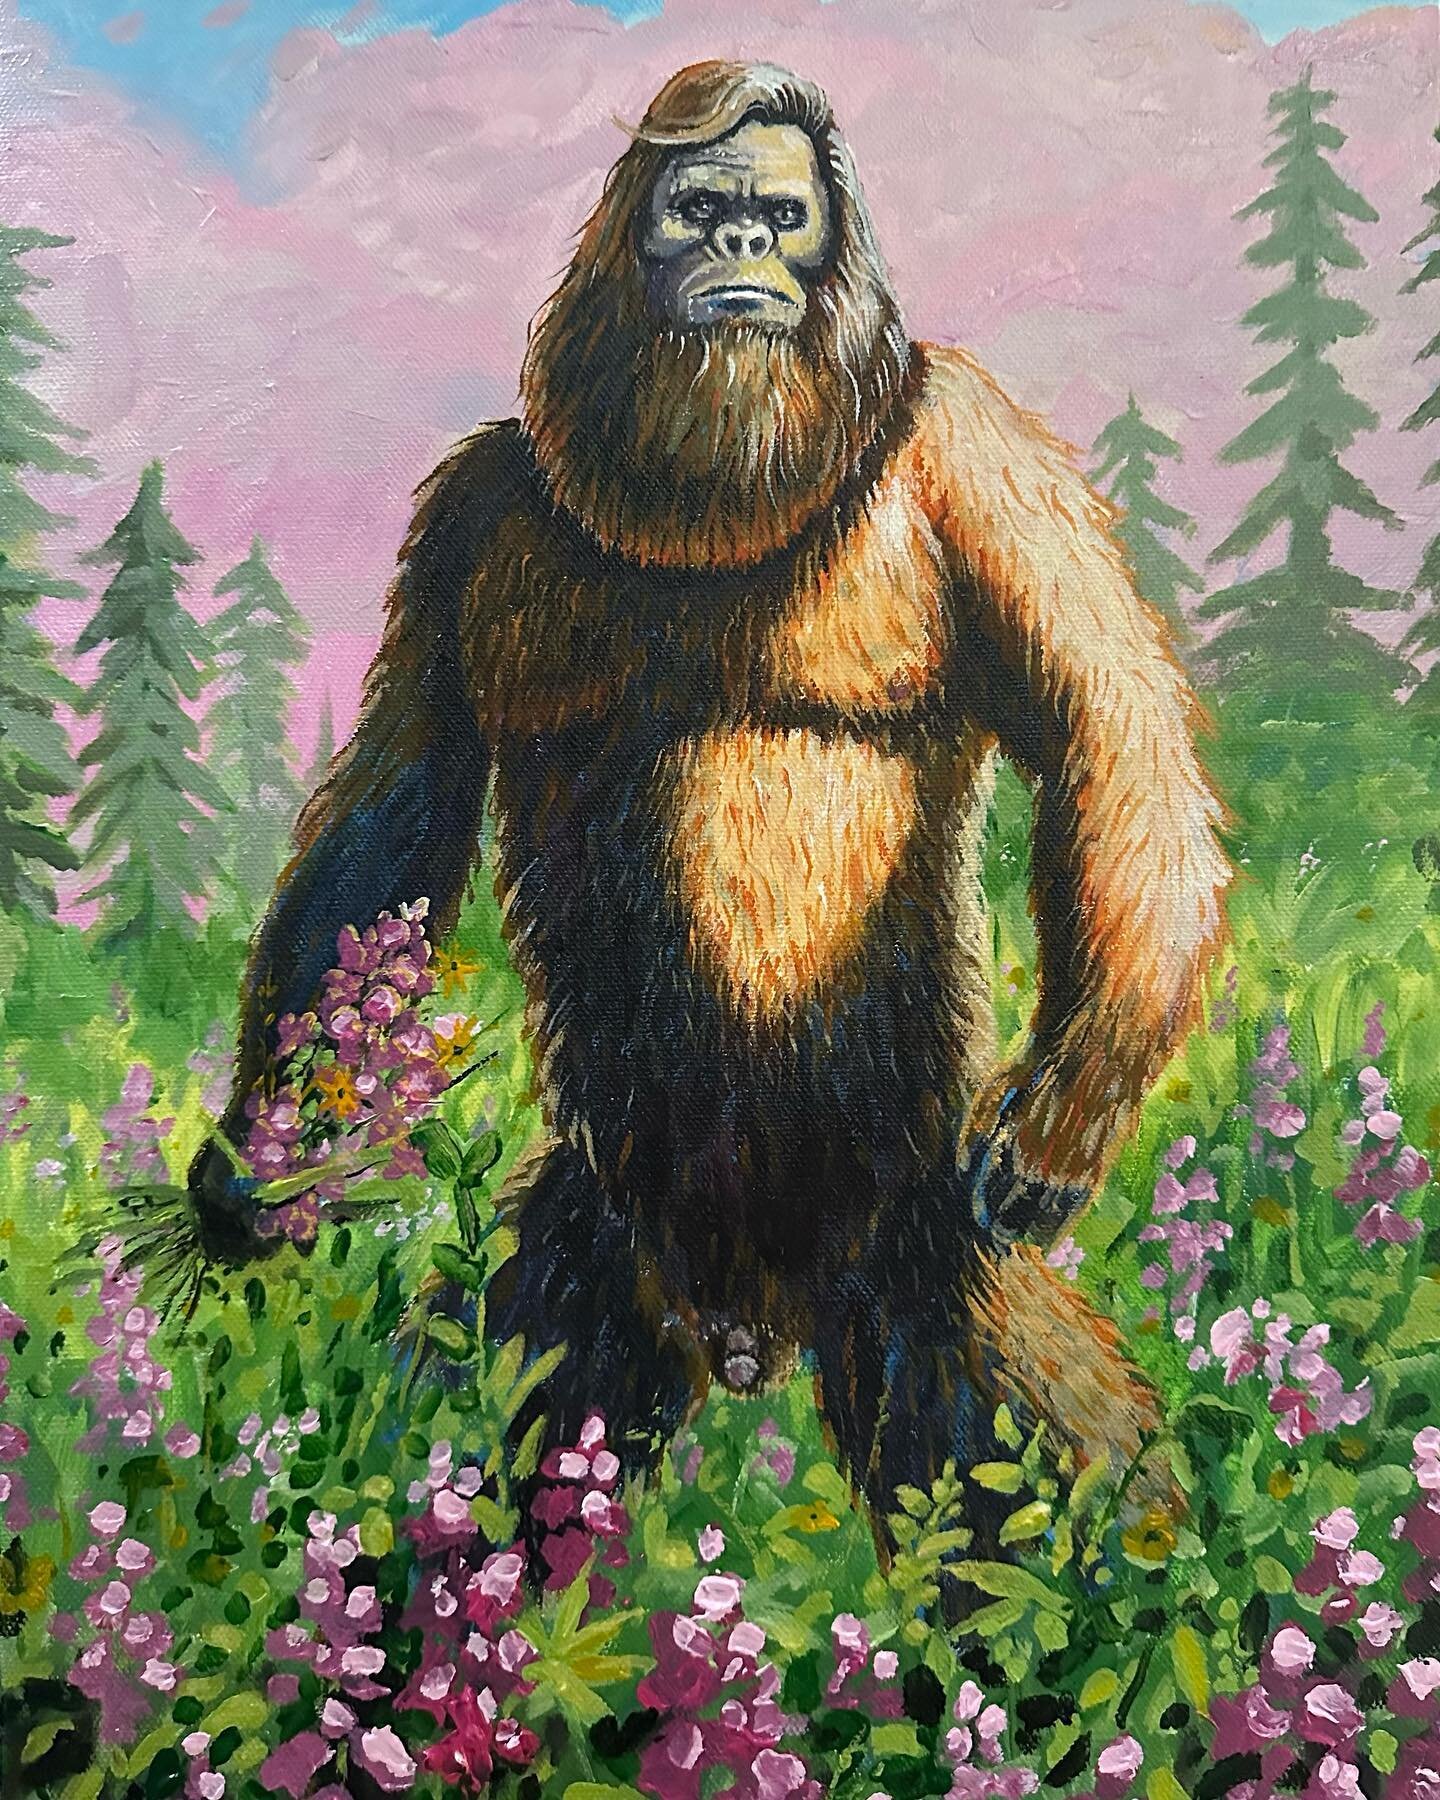 Fear Not, acrylic on canvas 12x16 #art #bigfoot #loveyourfear